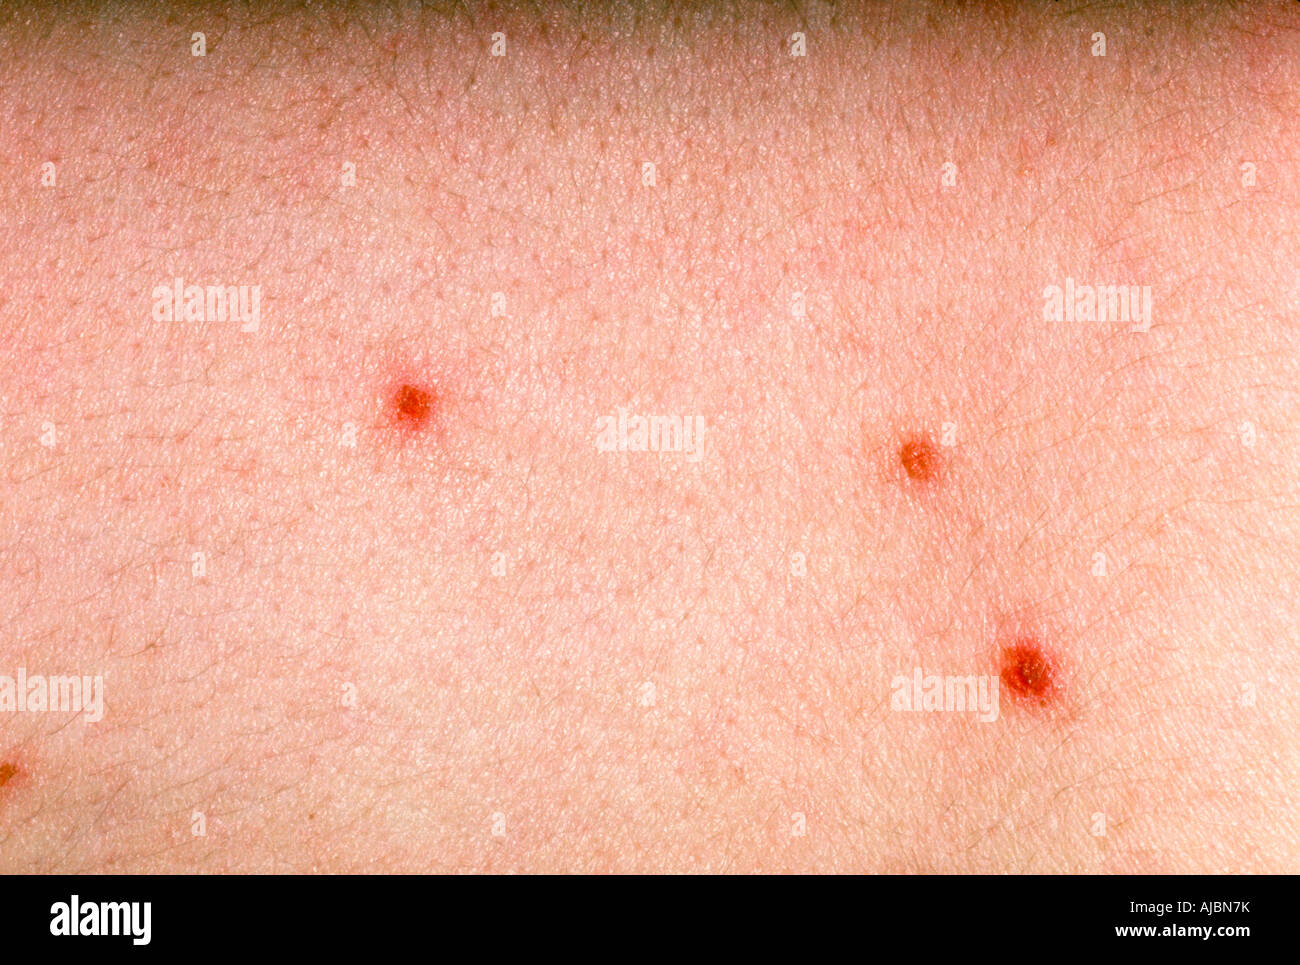 Fotografia di varicella lesioni, una malattia altamente infettiva causata da varicella, un herpesvirus. Foto Stock